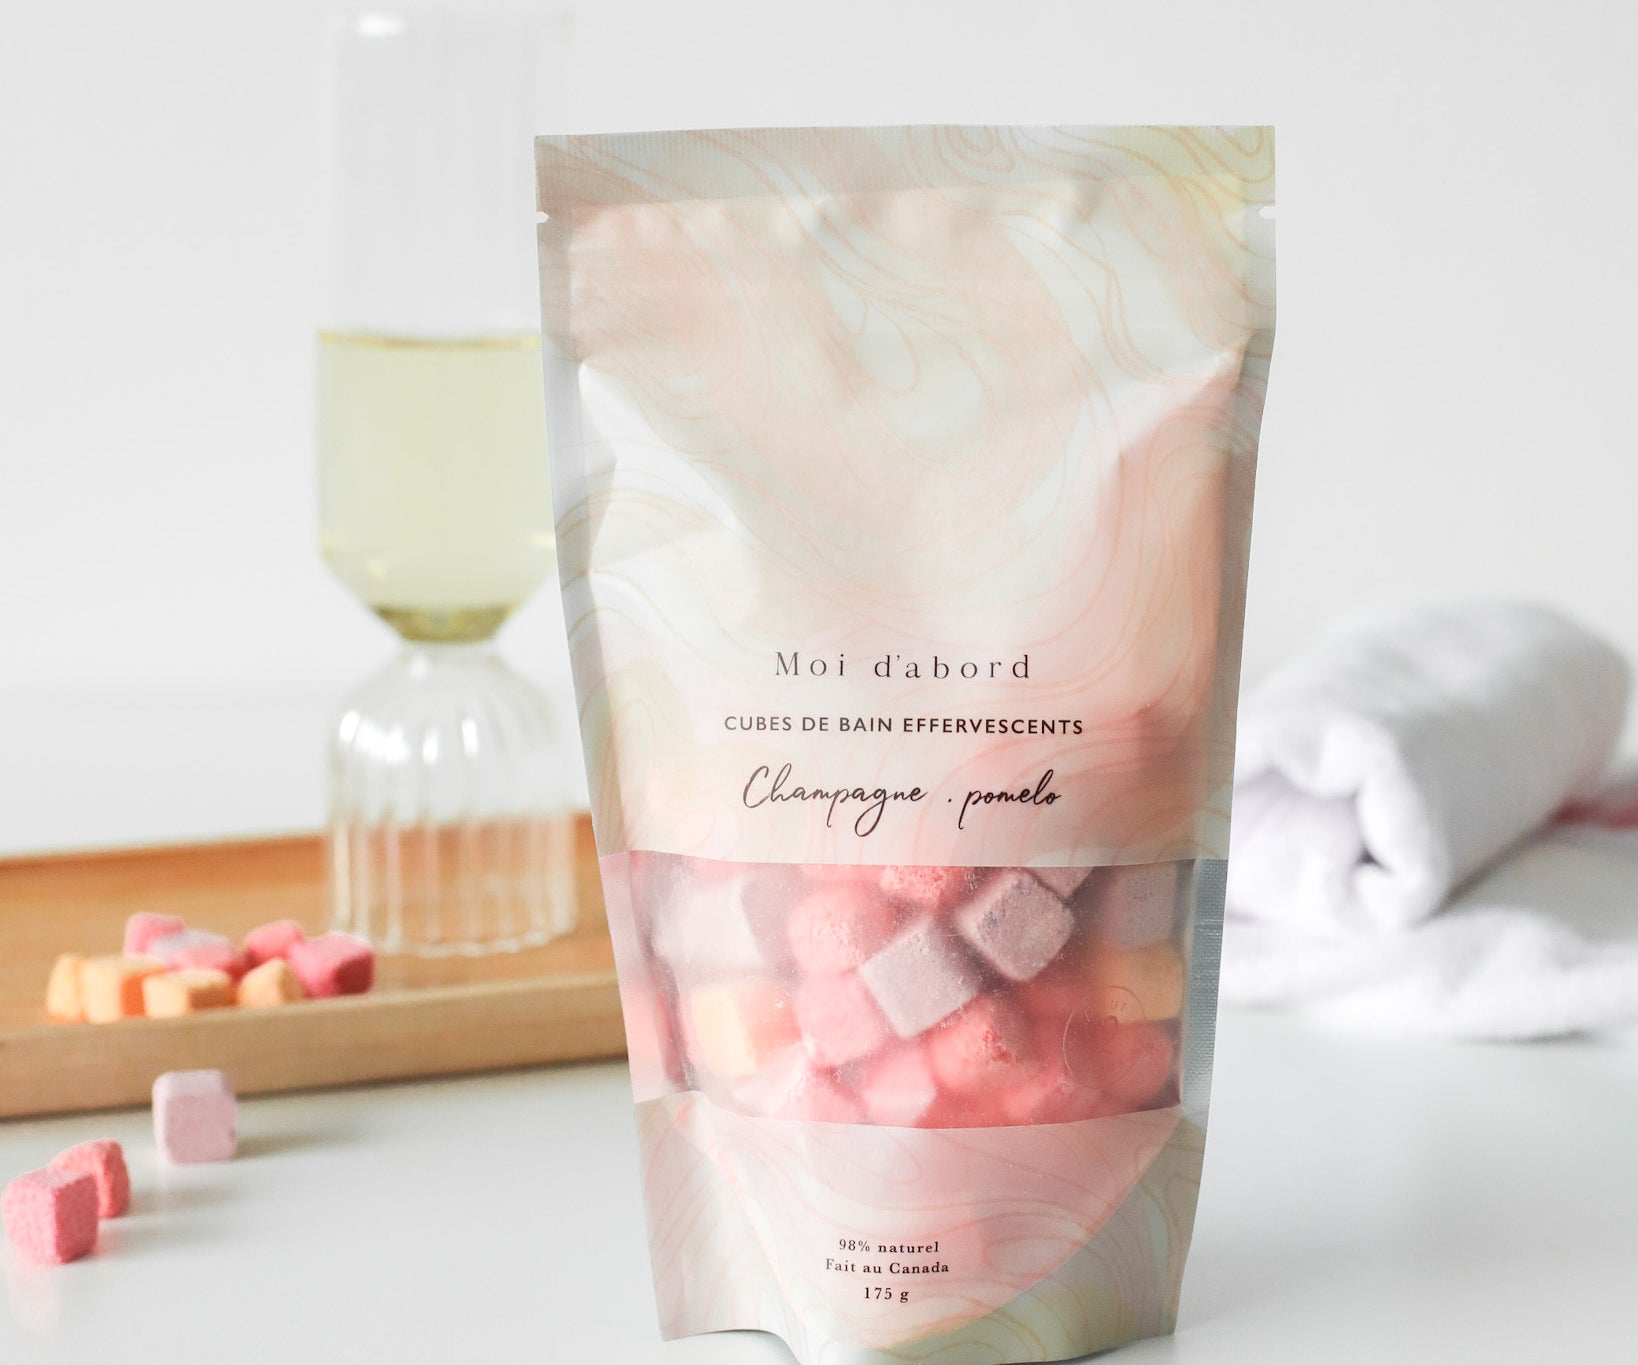 Cubes de bain effervescents – Champagne & pomelo